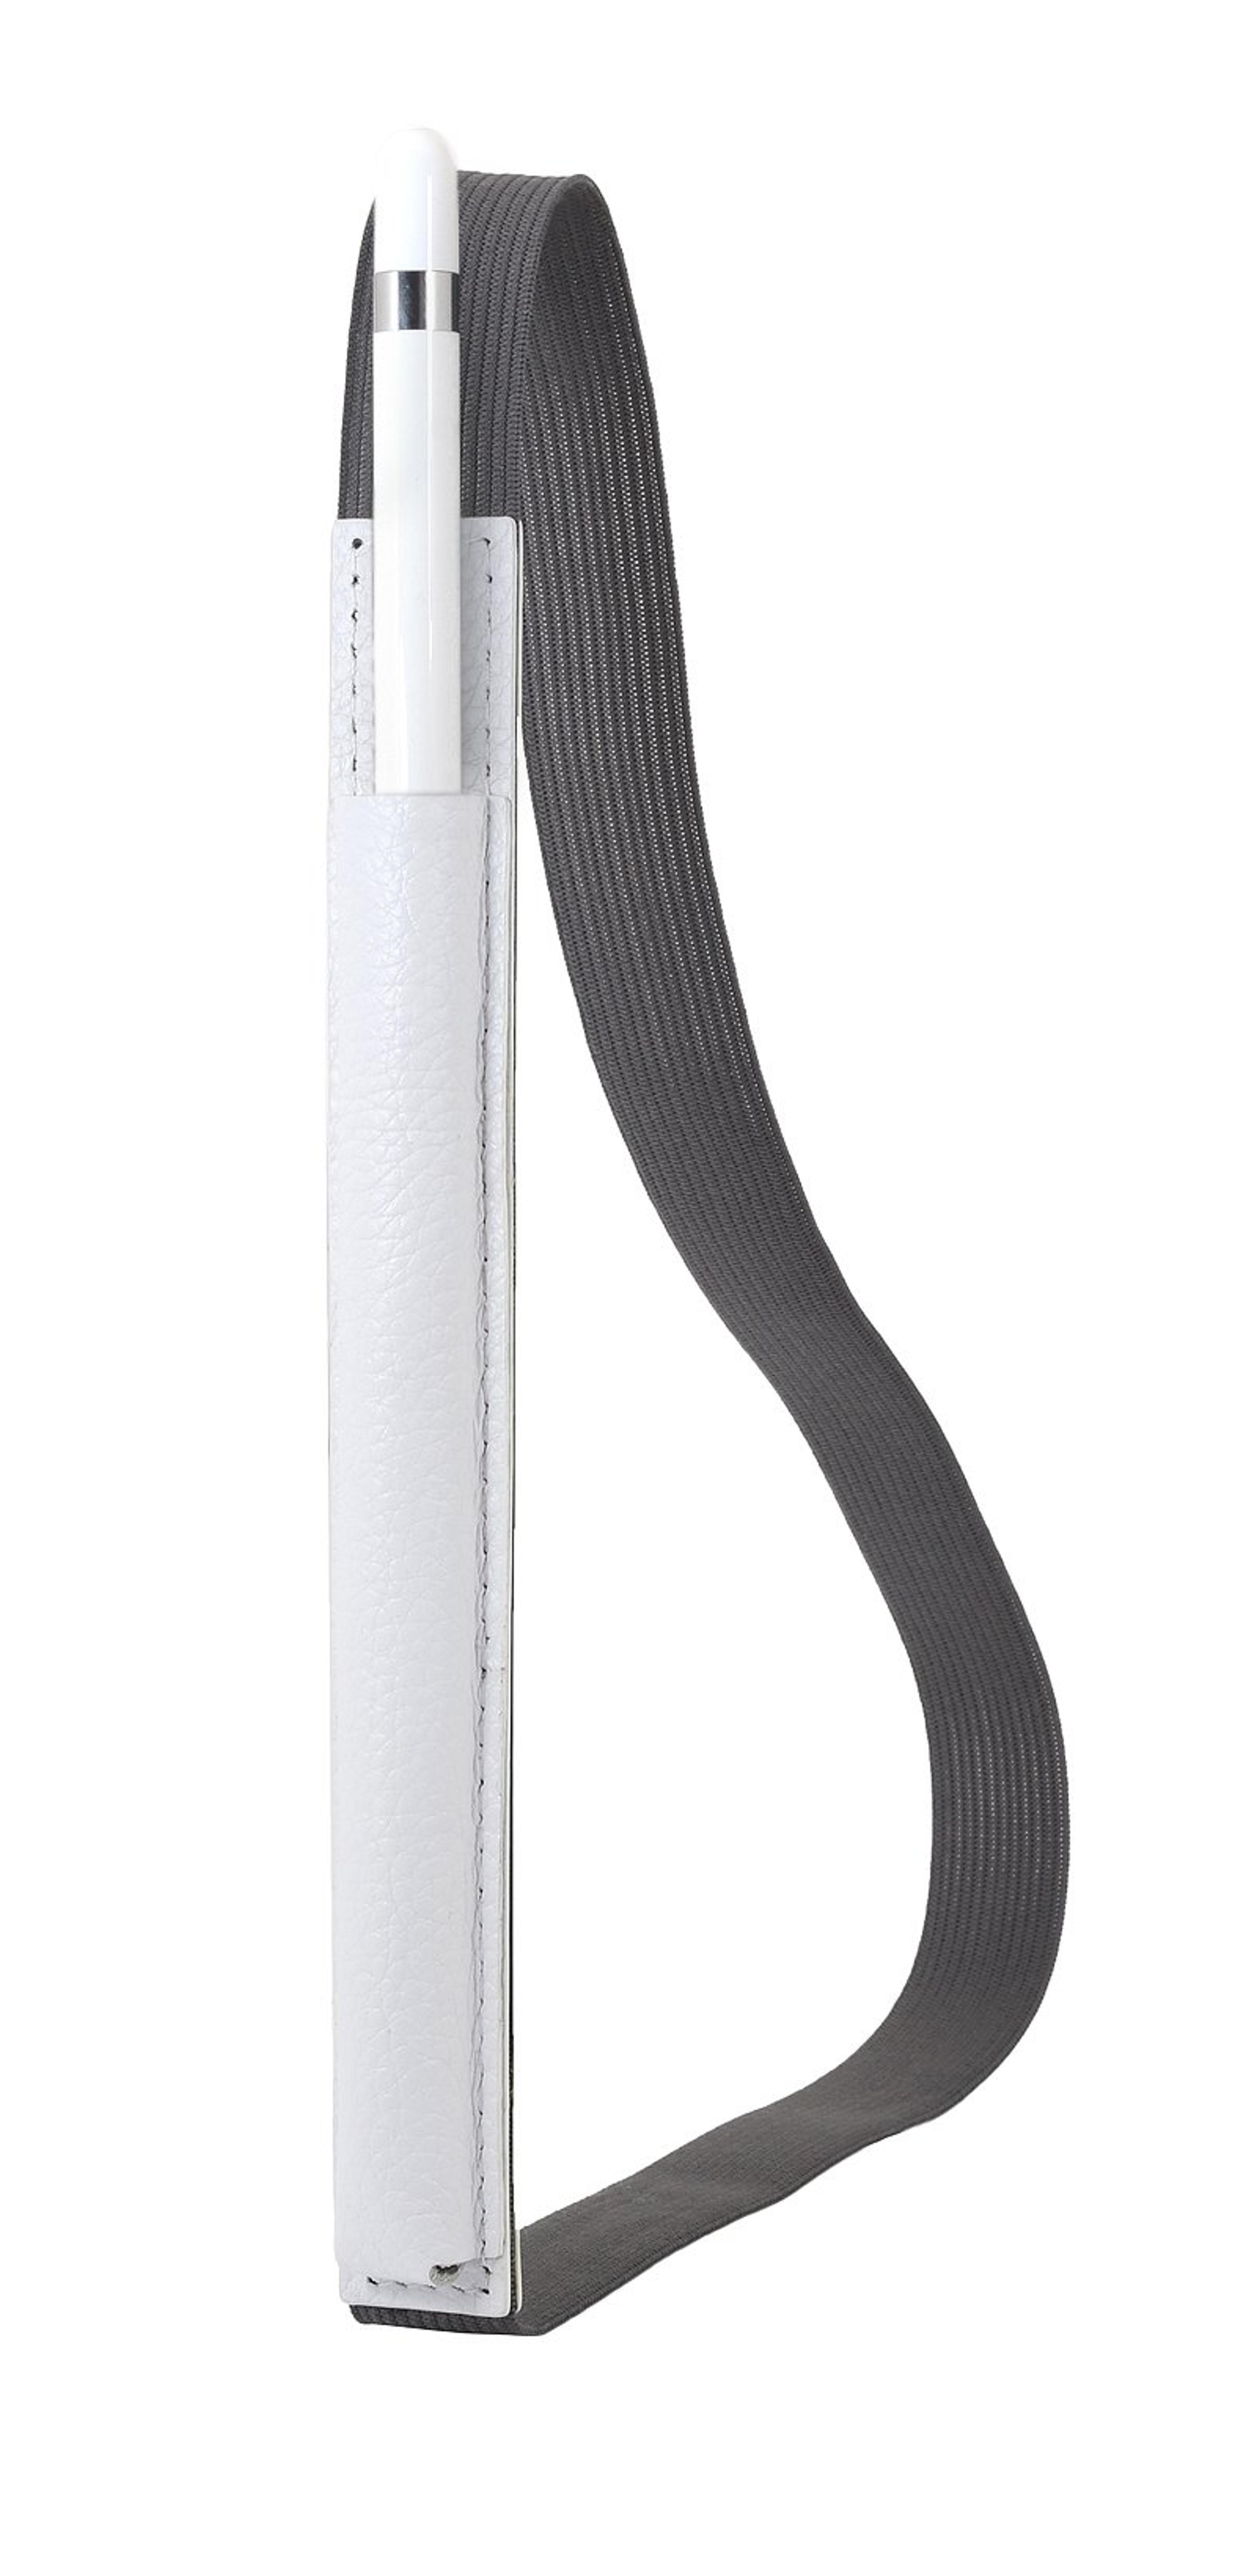 StilGut Apple Pencil Holder, Genuine Leather Sleeve, White